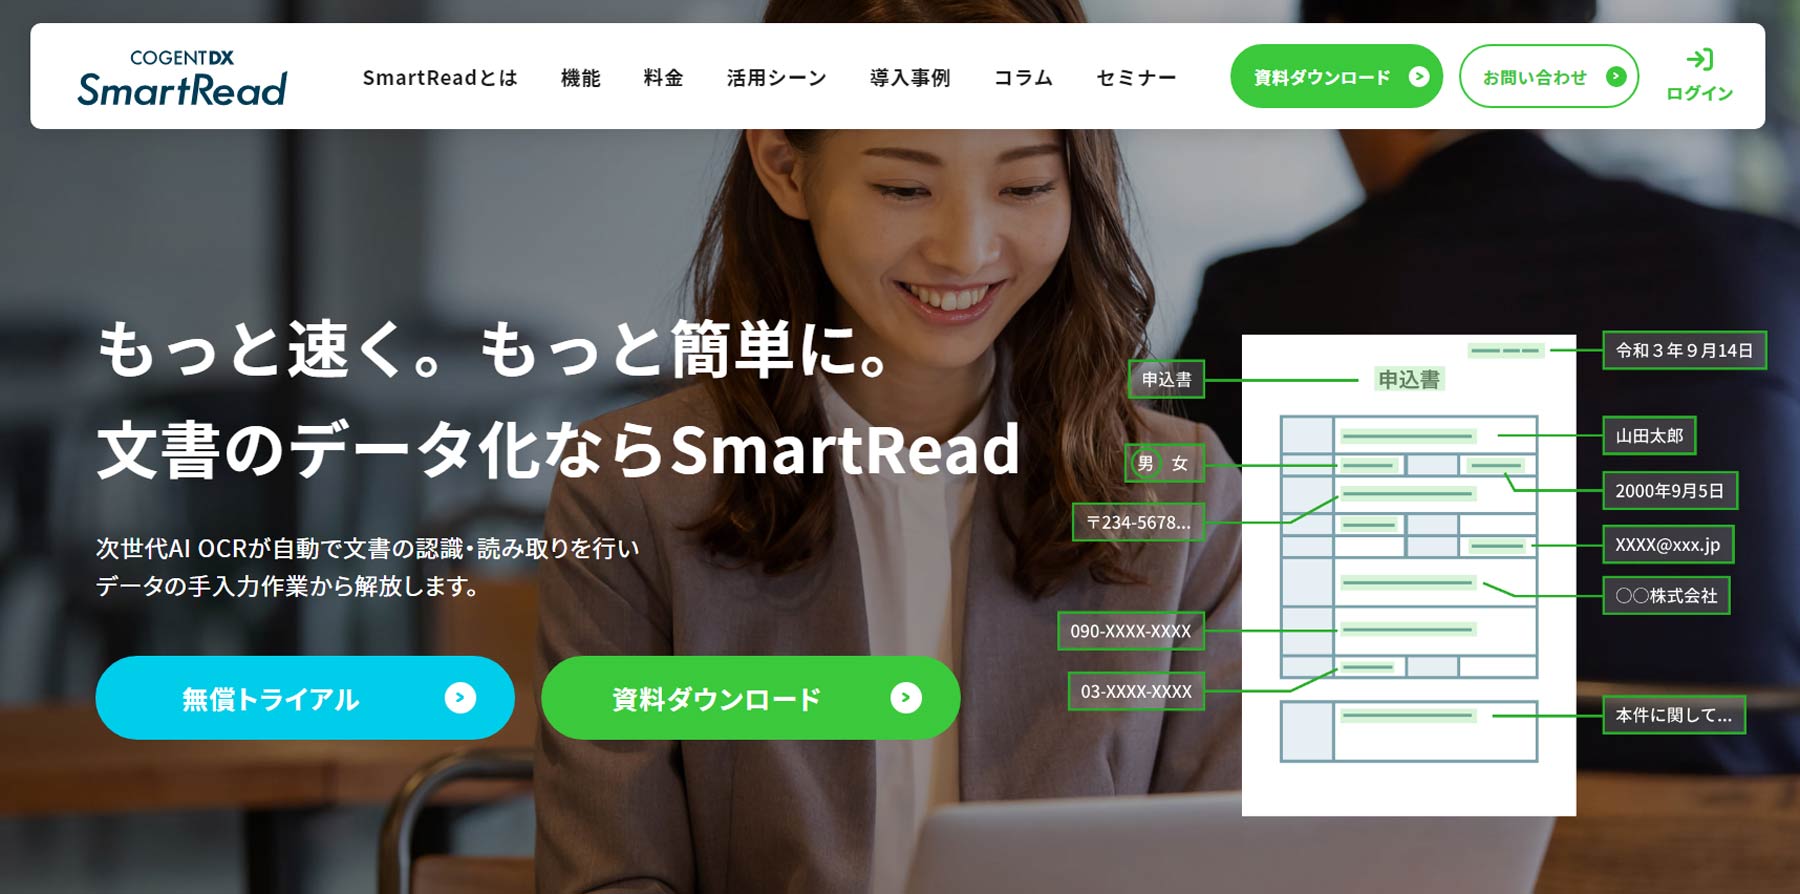 SmartRead公式Webサイト